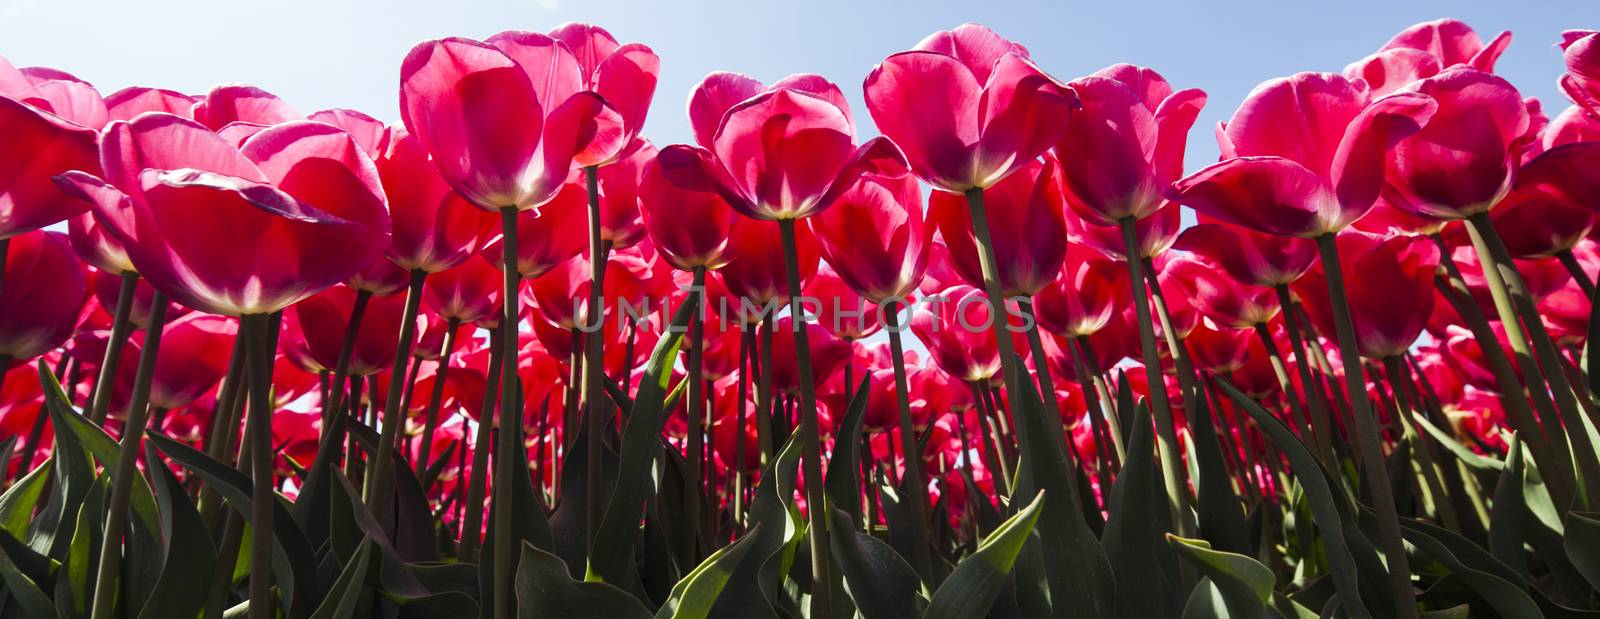 Fresh spring tulips with sky by JanPietruszka